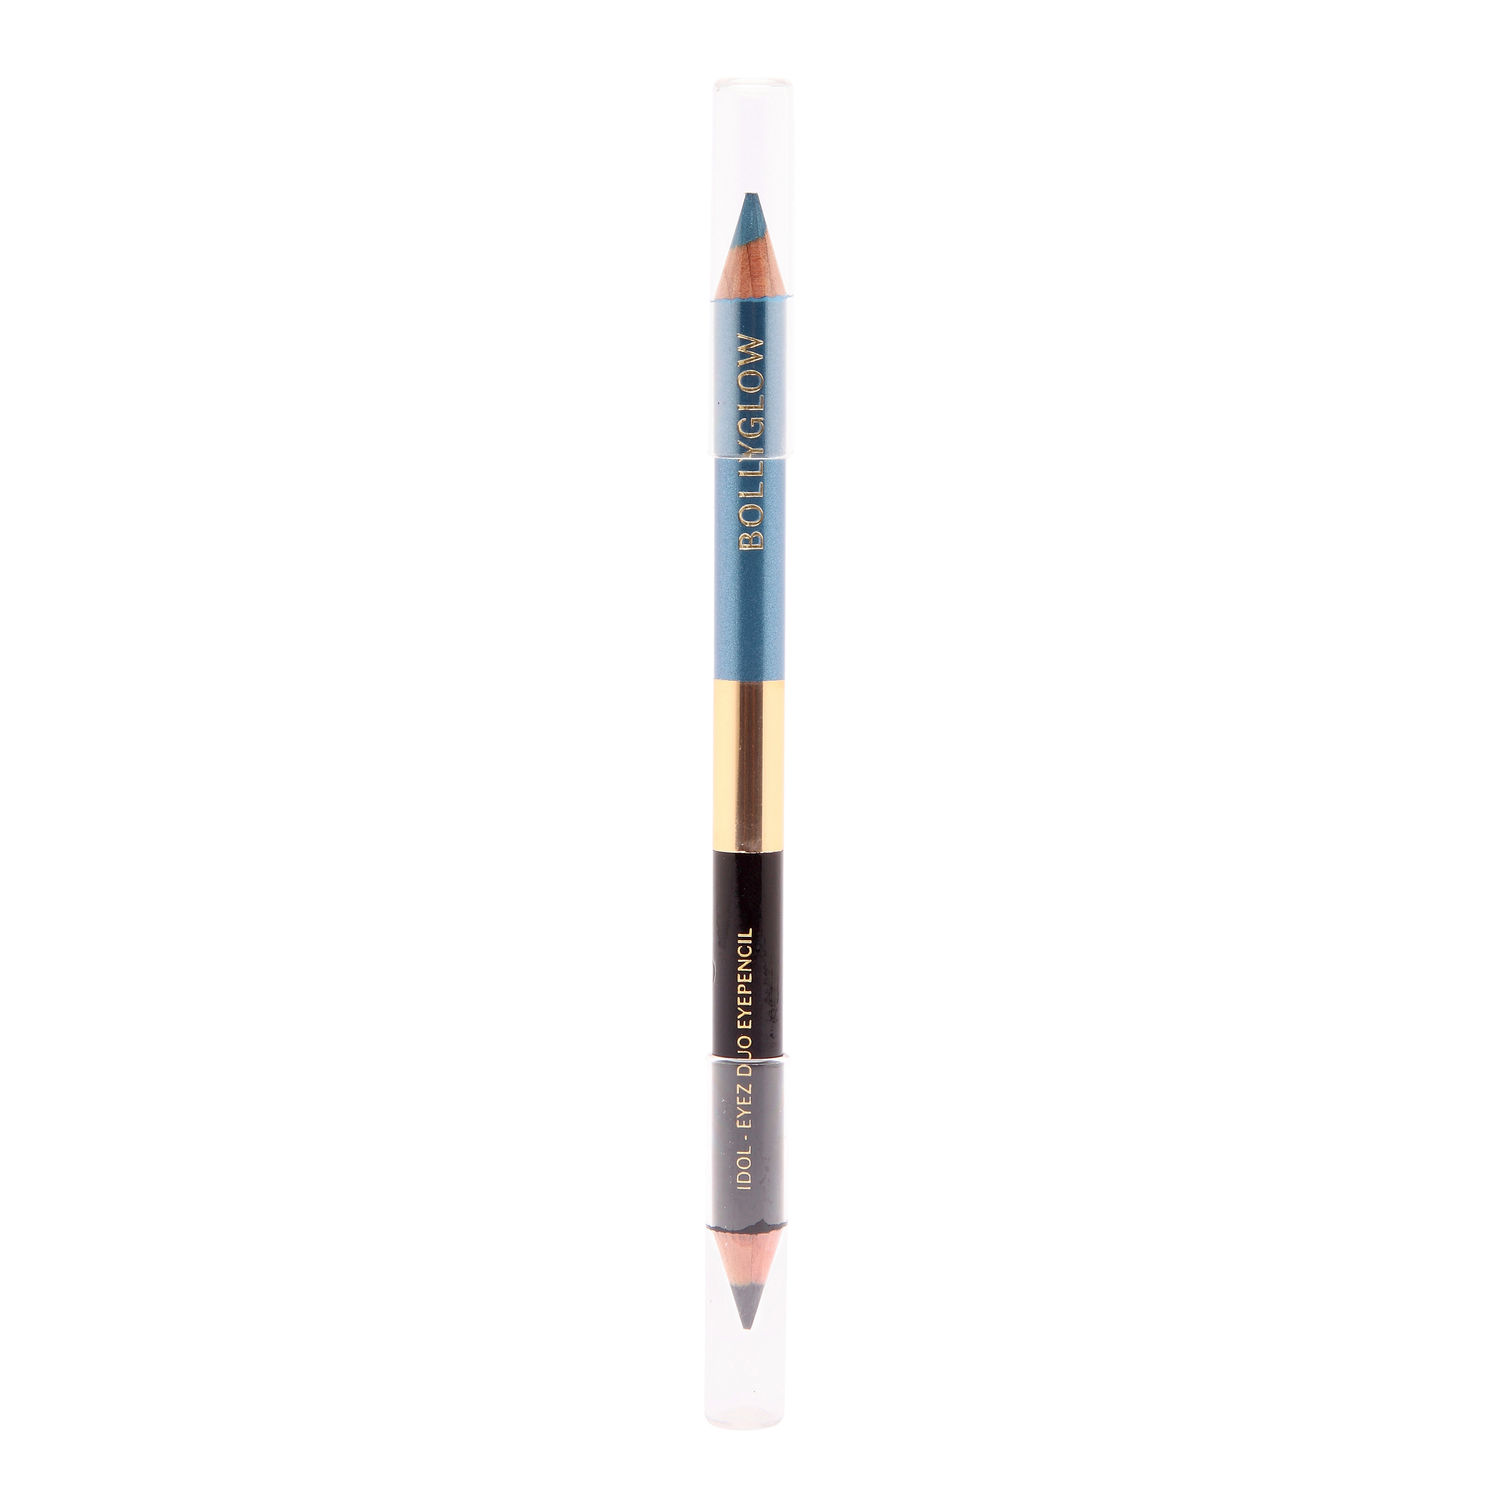 Buy Bollyglow Idol-Eyez Duo Eye Pencil Eyeliner Midnight Moon Aquawoman (0.78 g) - Purplle